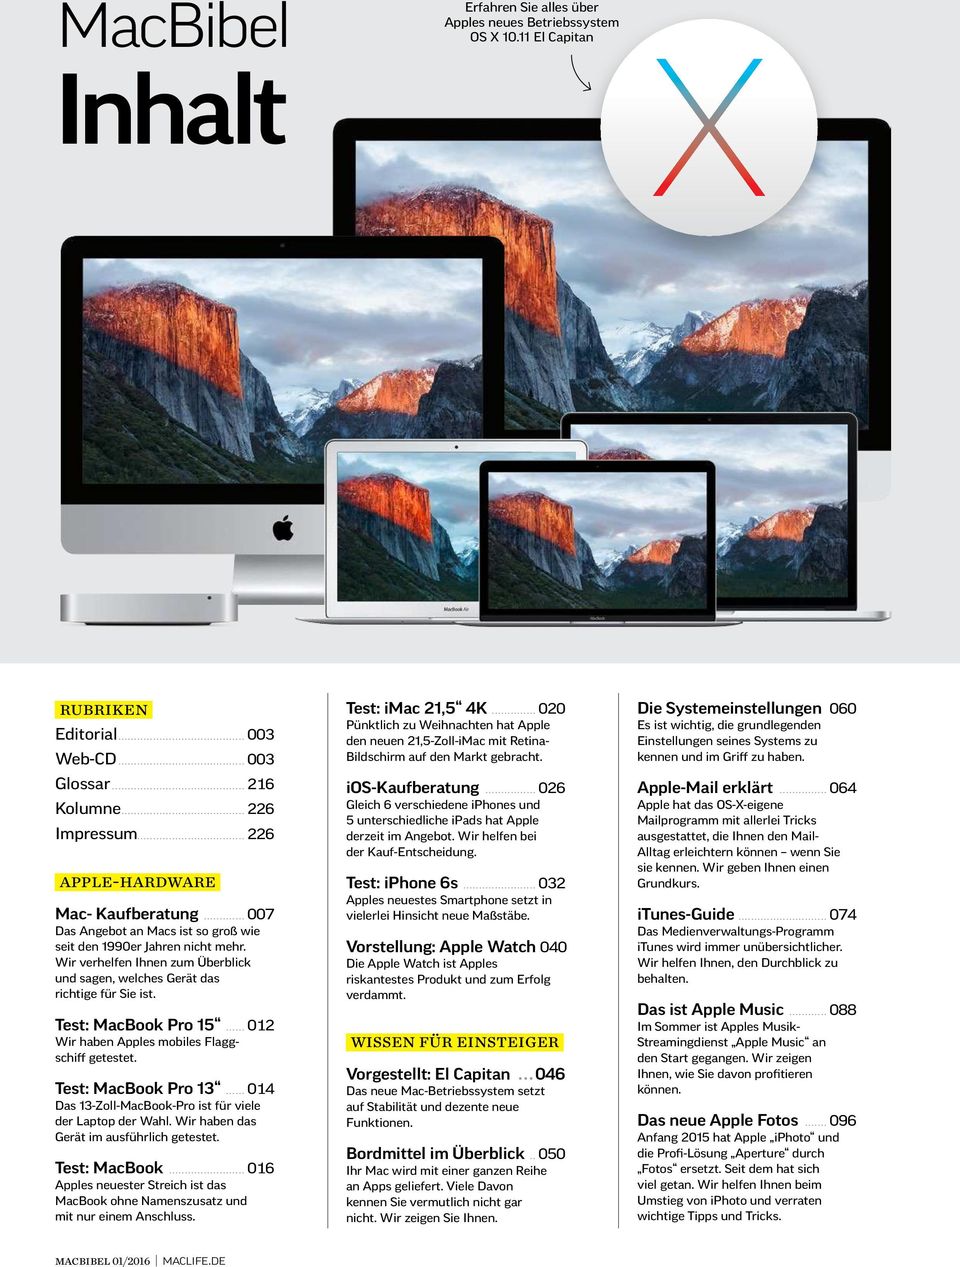 Wir verhelfen Ihnen zum Überblick und sagen, welches Gerät das richtige für Sie ist. Test: MacBook Pro 15... 012 Wir haben Apples mobiles Flaggschif getestet. Test: MacBook Pro 13.